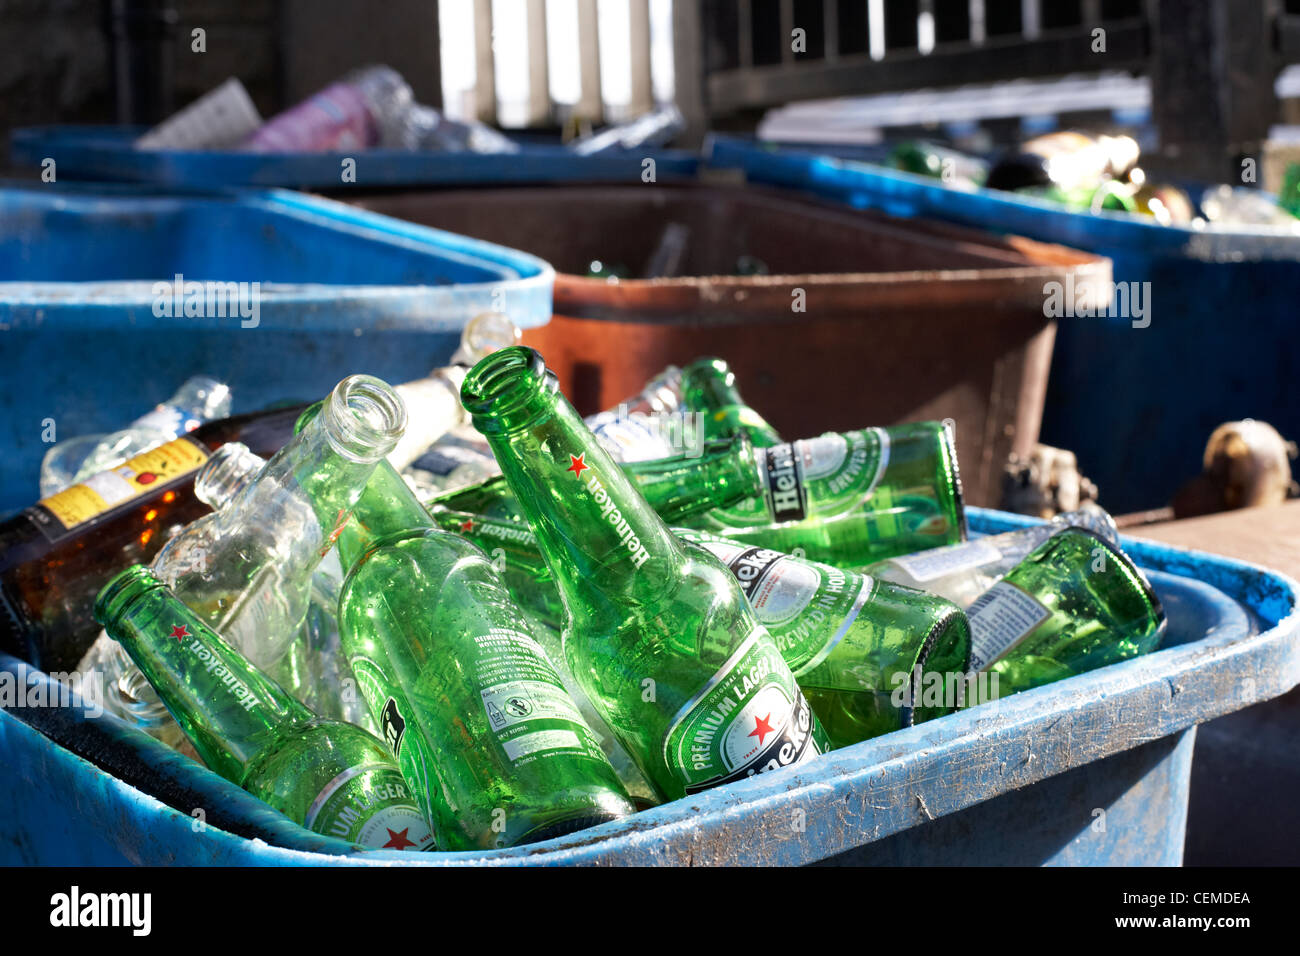 Papelera de reciclaje llena de botellas vacías de cerveza y fuera de un pub o bar en el reino unido Foto de stock